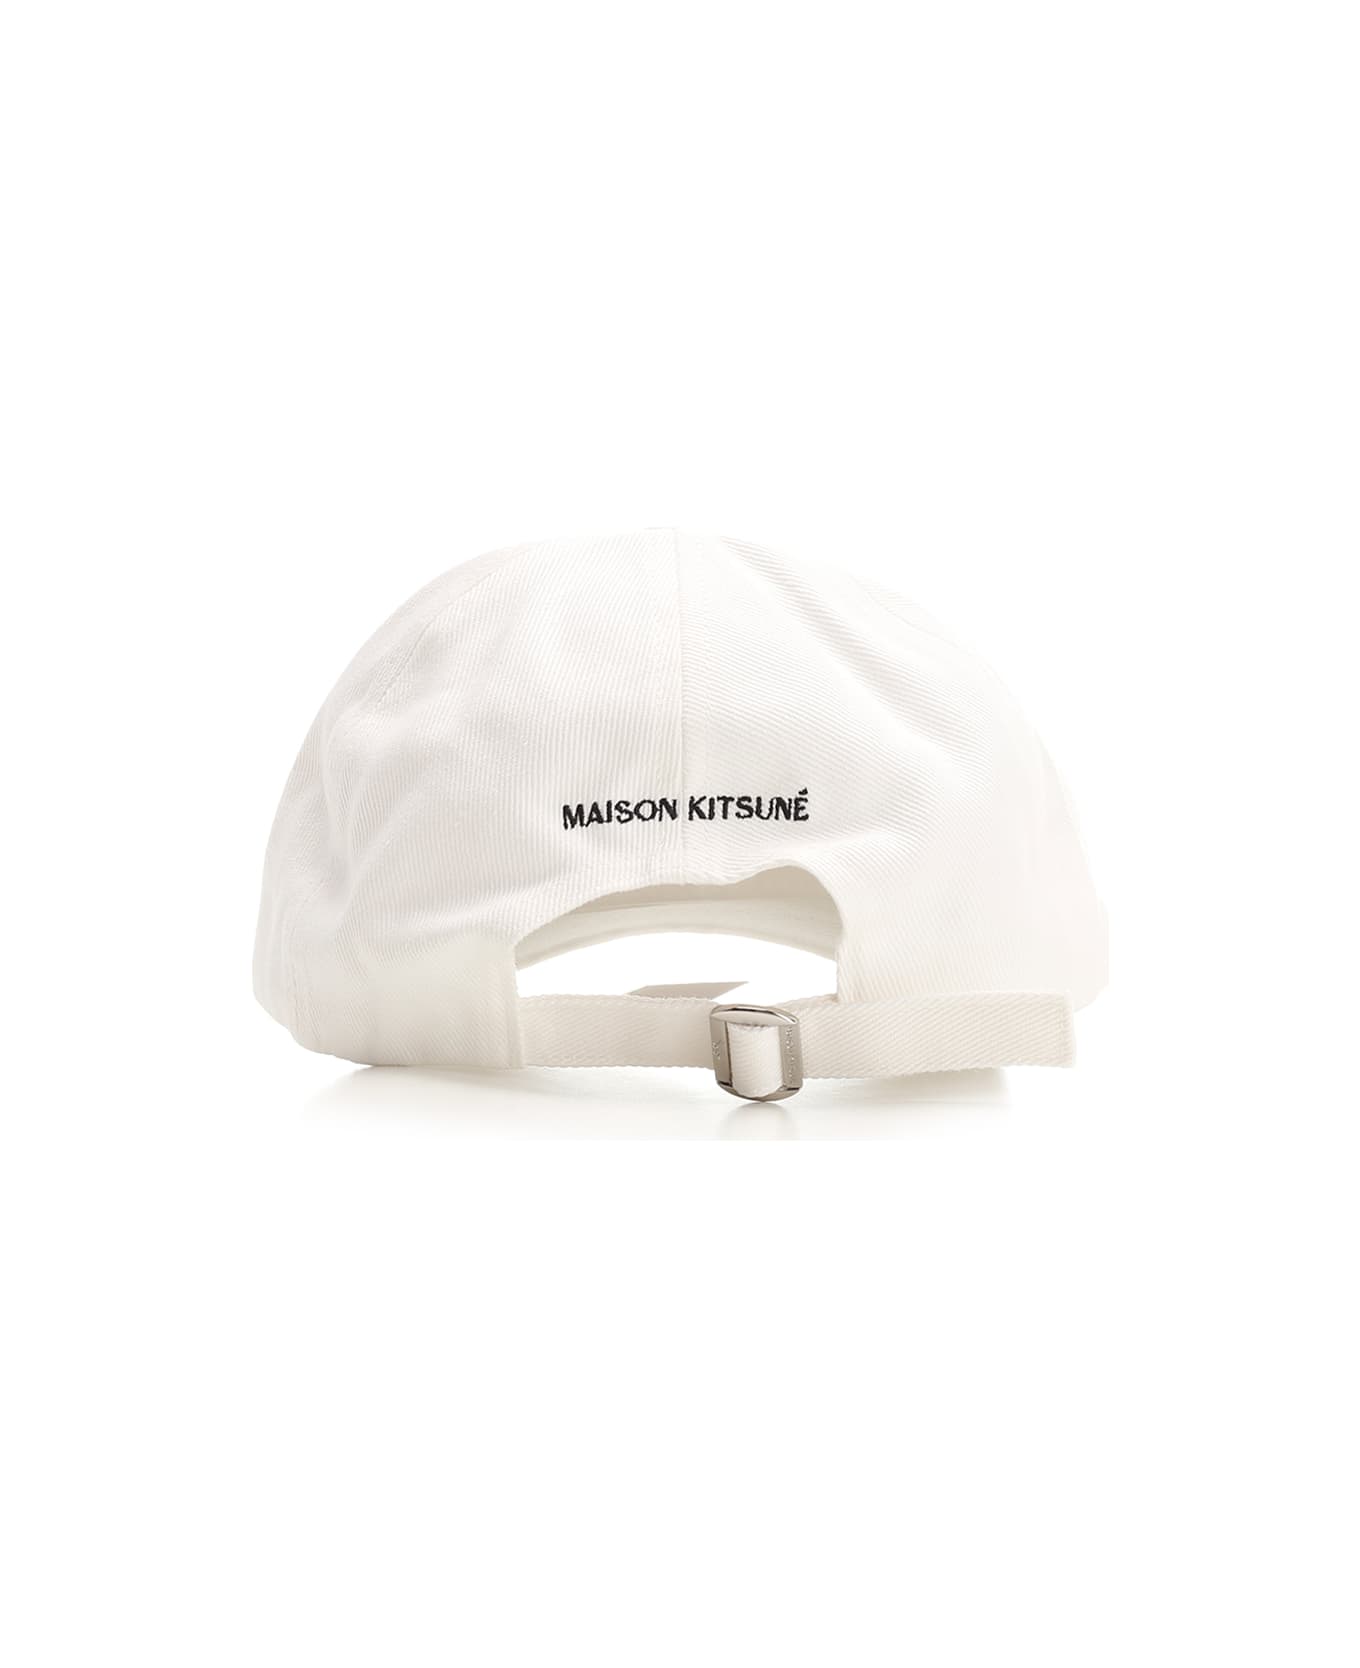 Maison Kitsuné Fox Baseball Cap - White 帽子